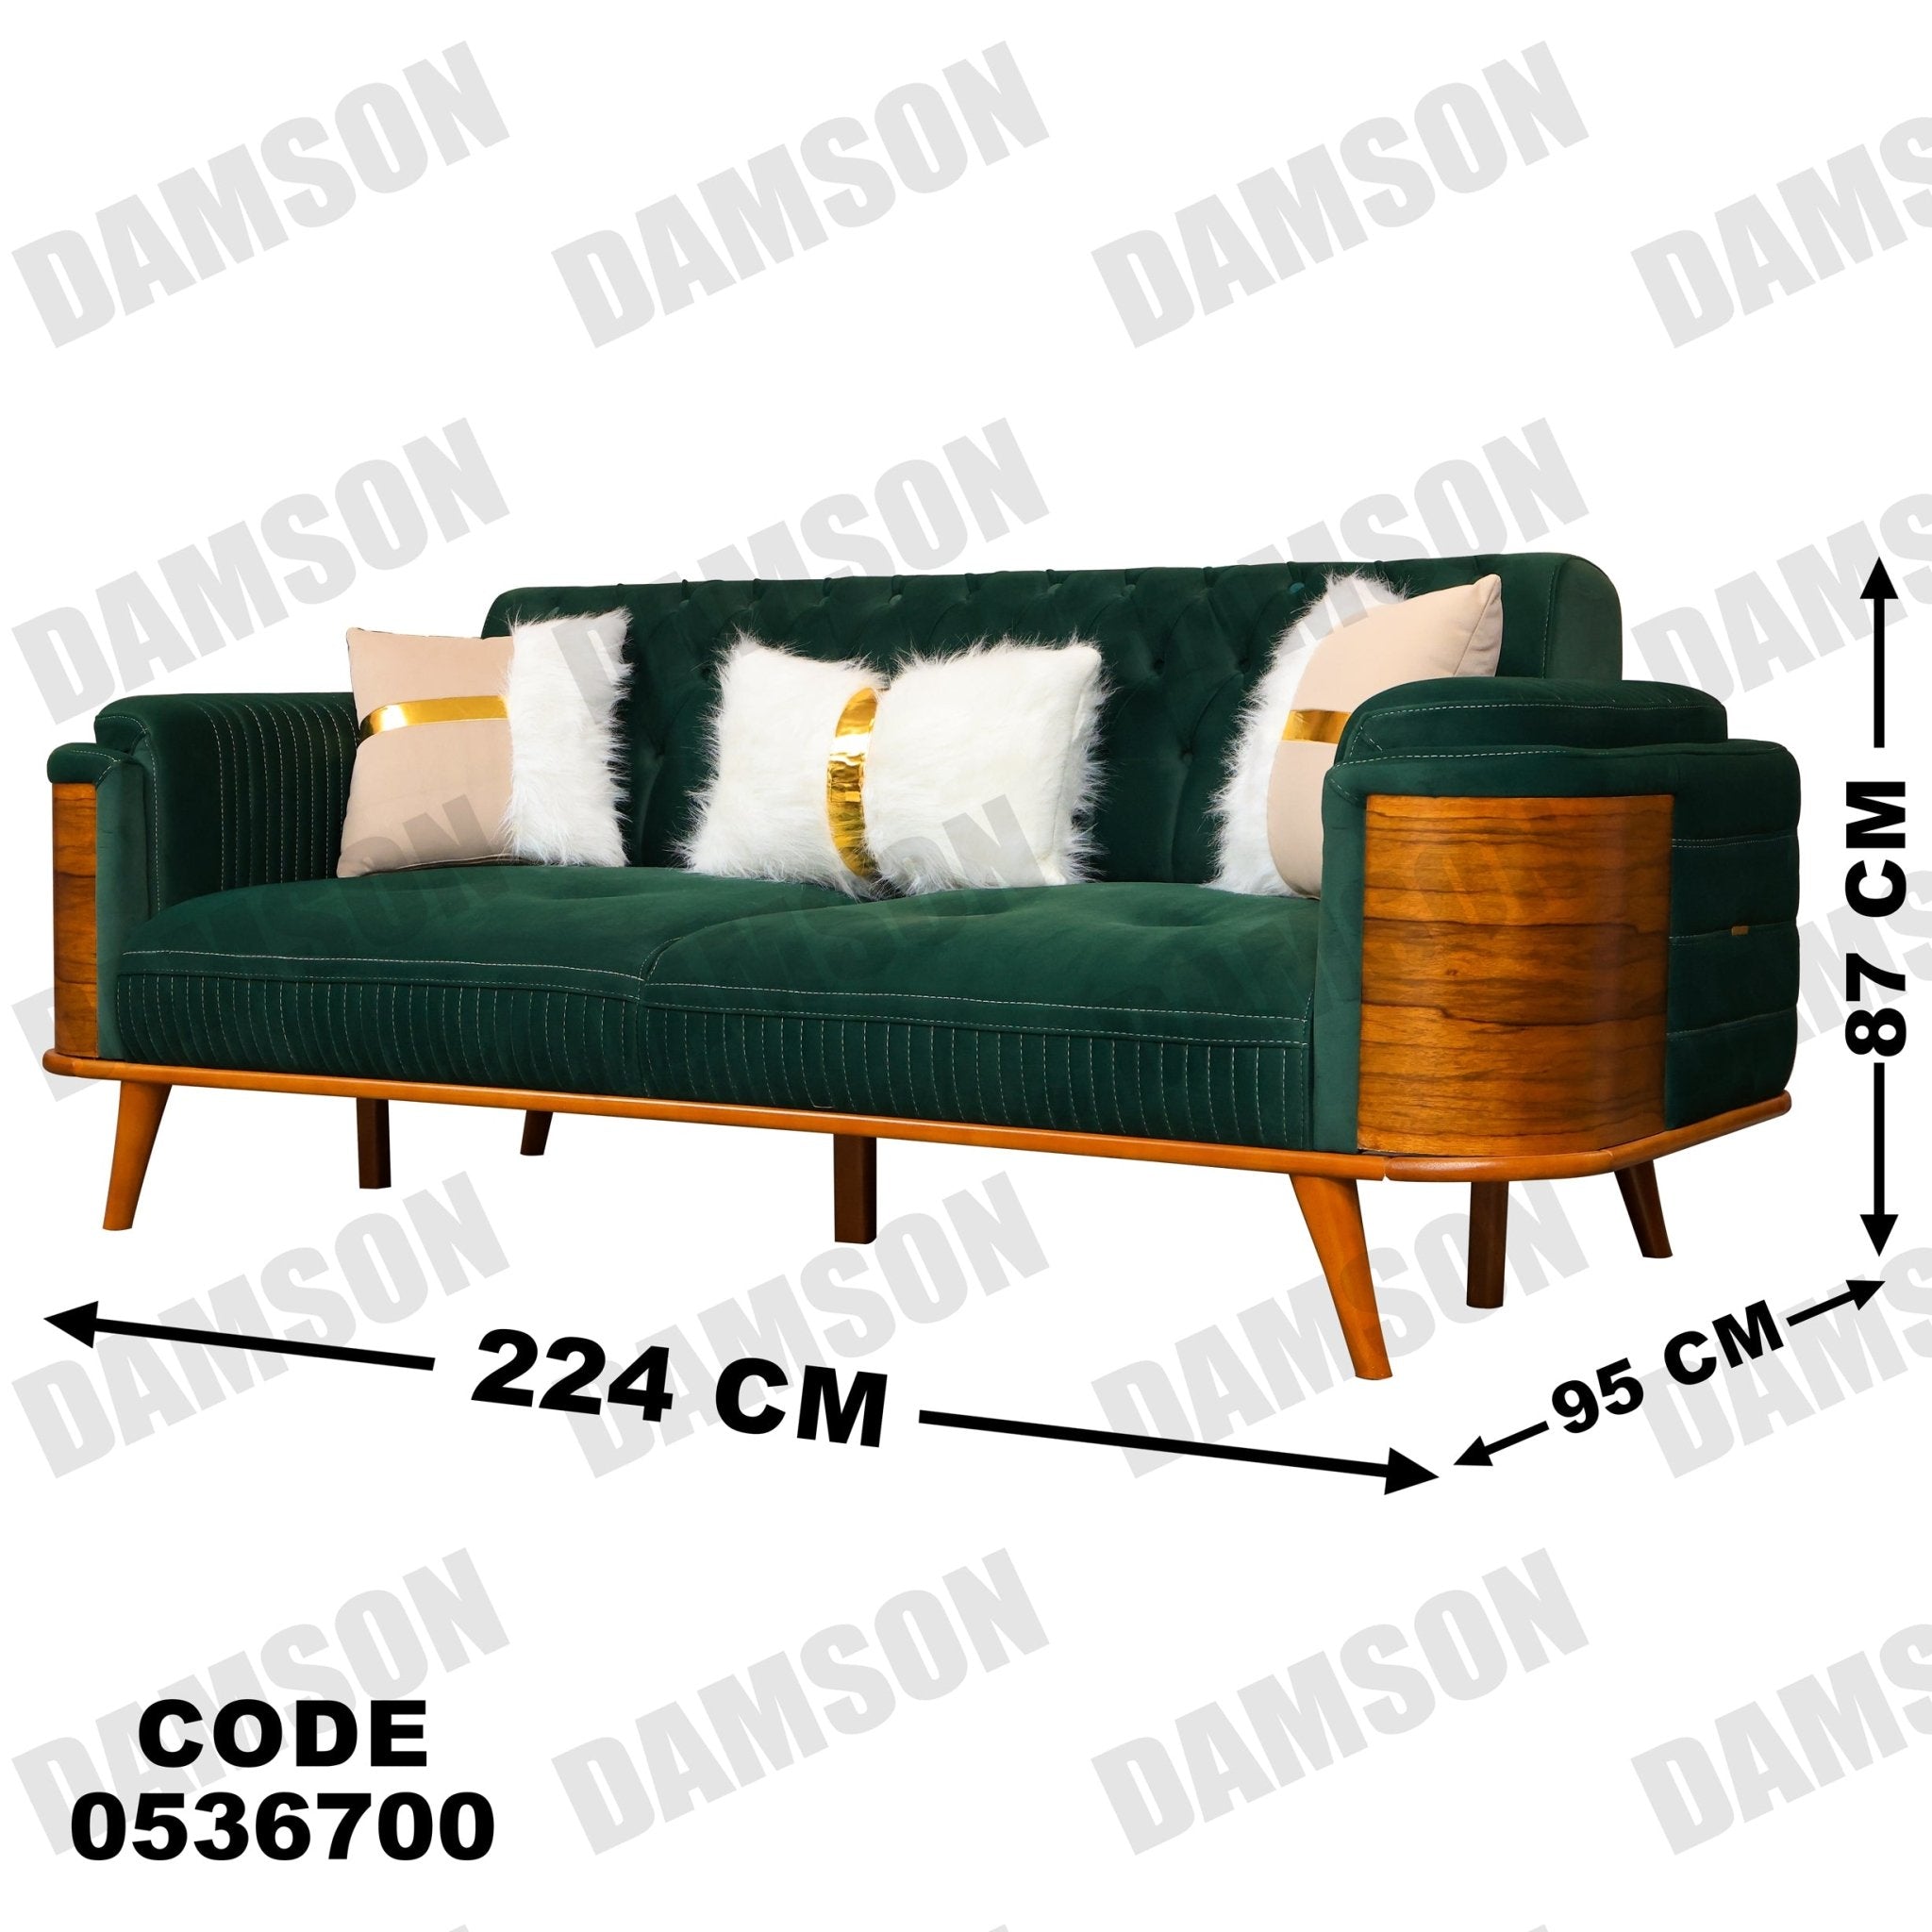 انترية 367 - Damson Furnitureانترية 367